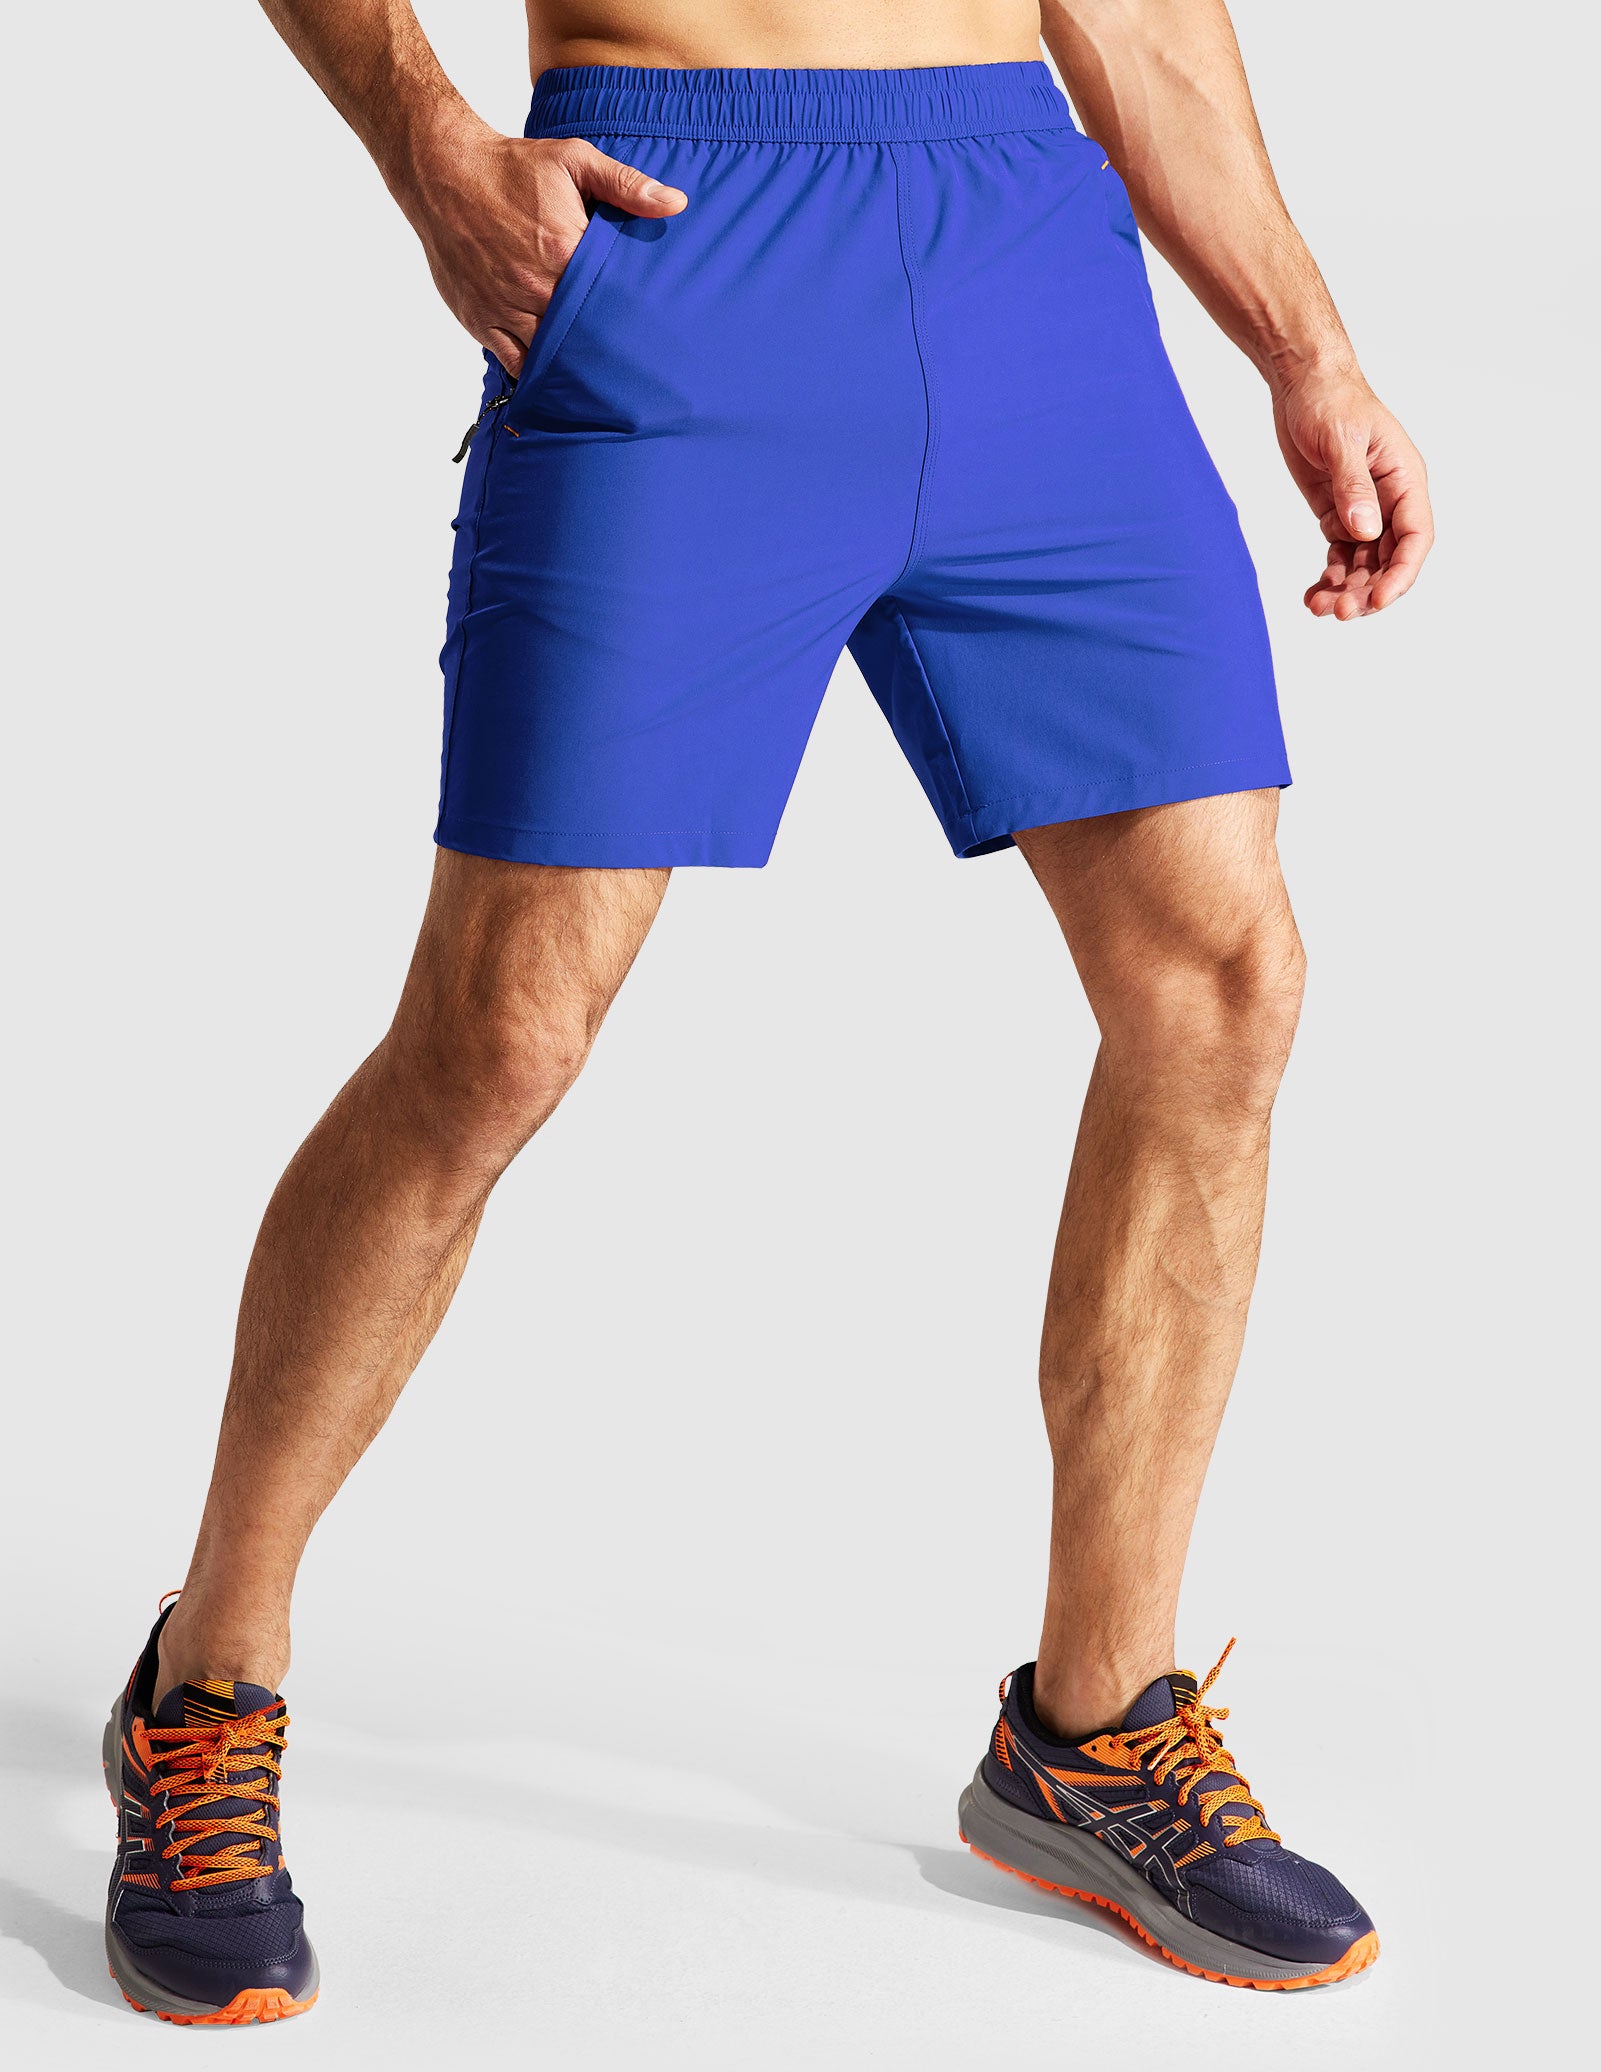 EVERWORTH - Shorts de entrenamiento para hombre, pantalones cortos de  entrenamiento ajustados para correr, con bolsillo con cremallera, en 3  colores